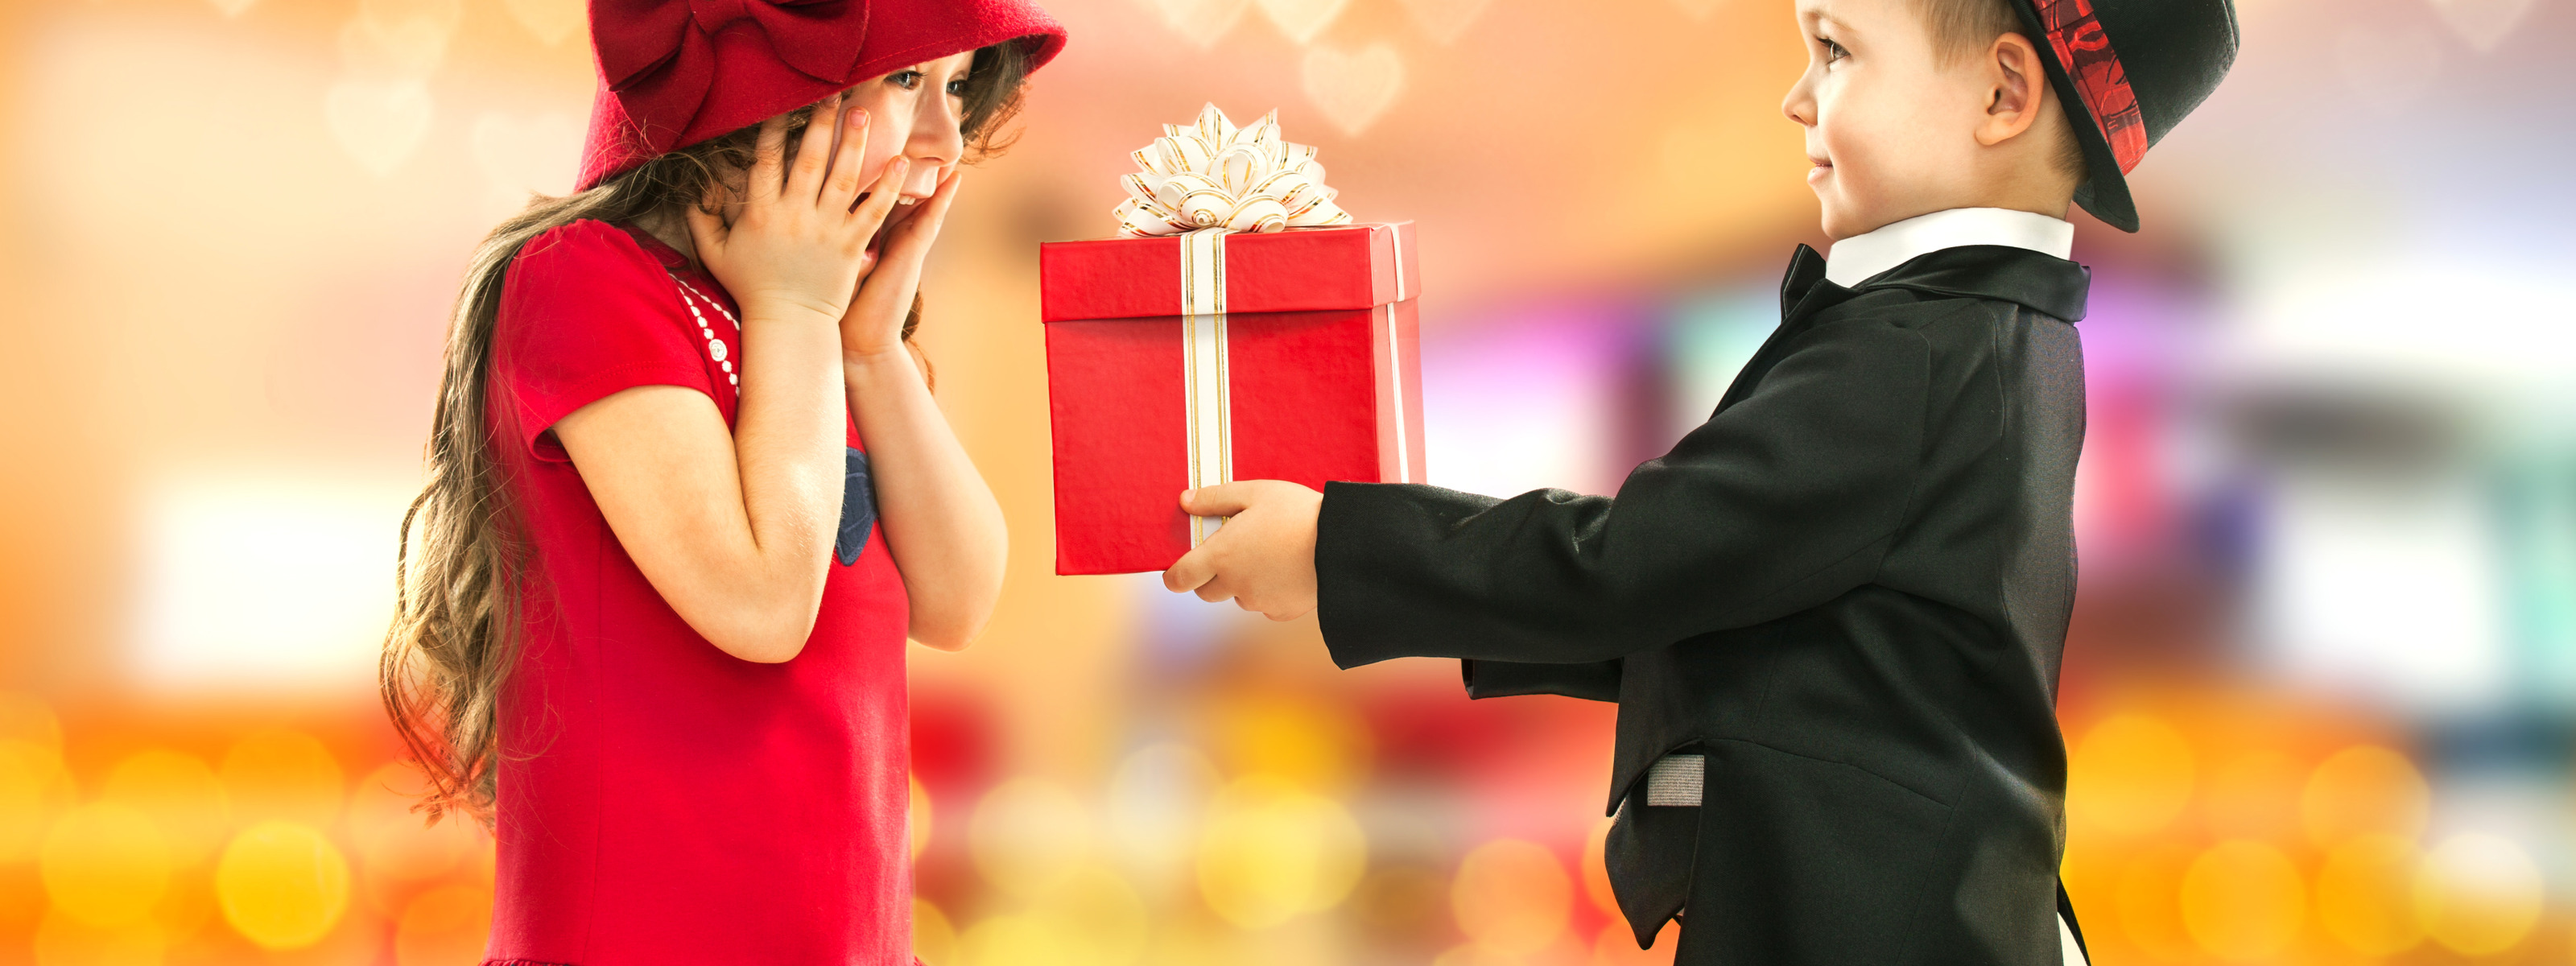 Играть получить подарки. Подарки для детей. Ребенок дарит подарок. Подарок мальчику. Девочка дарит подарок.